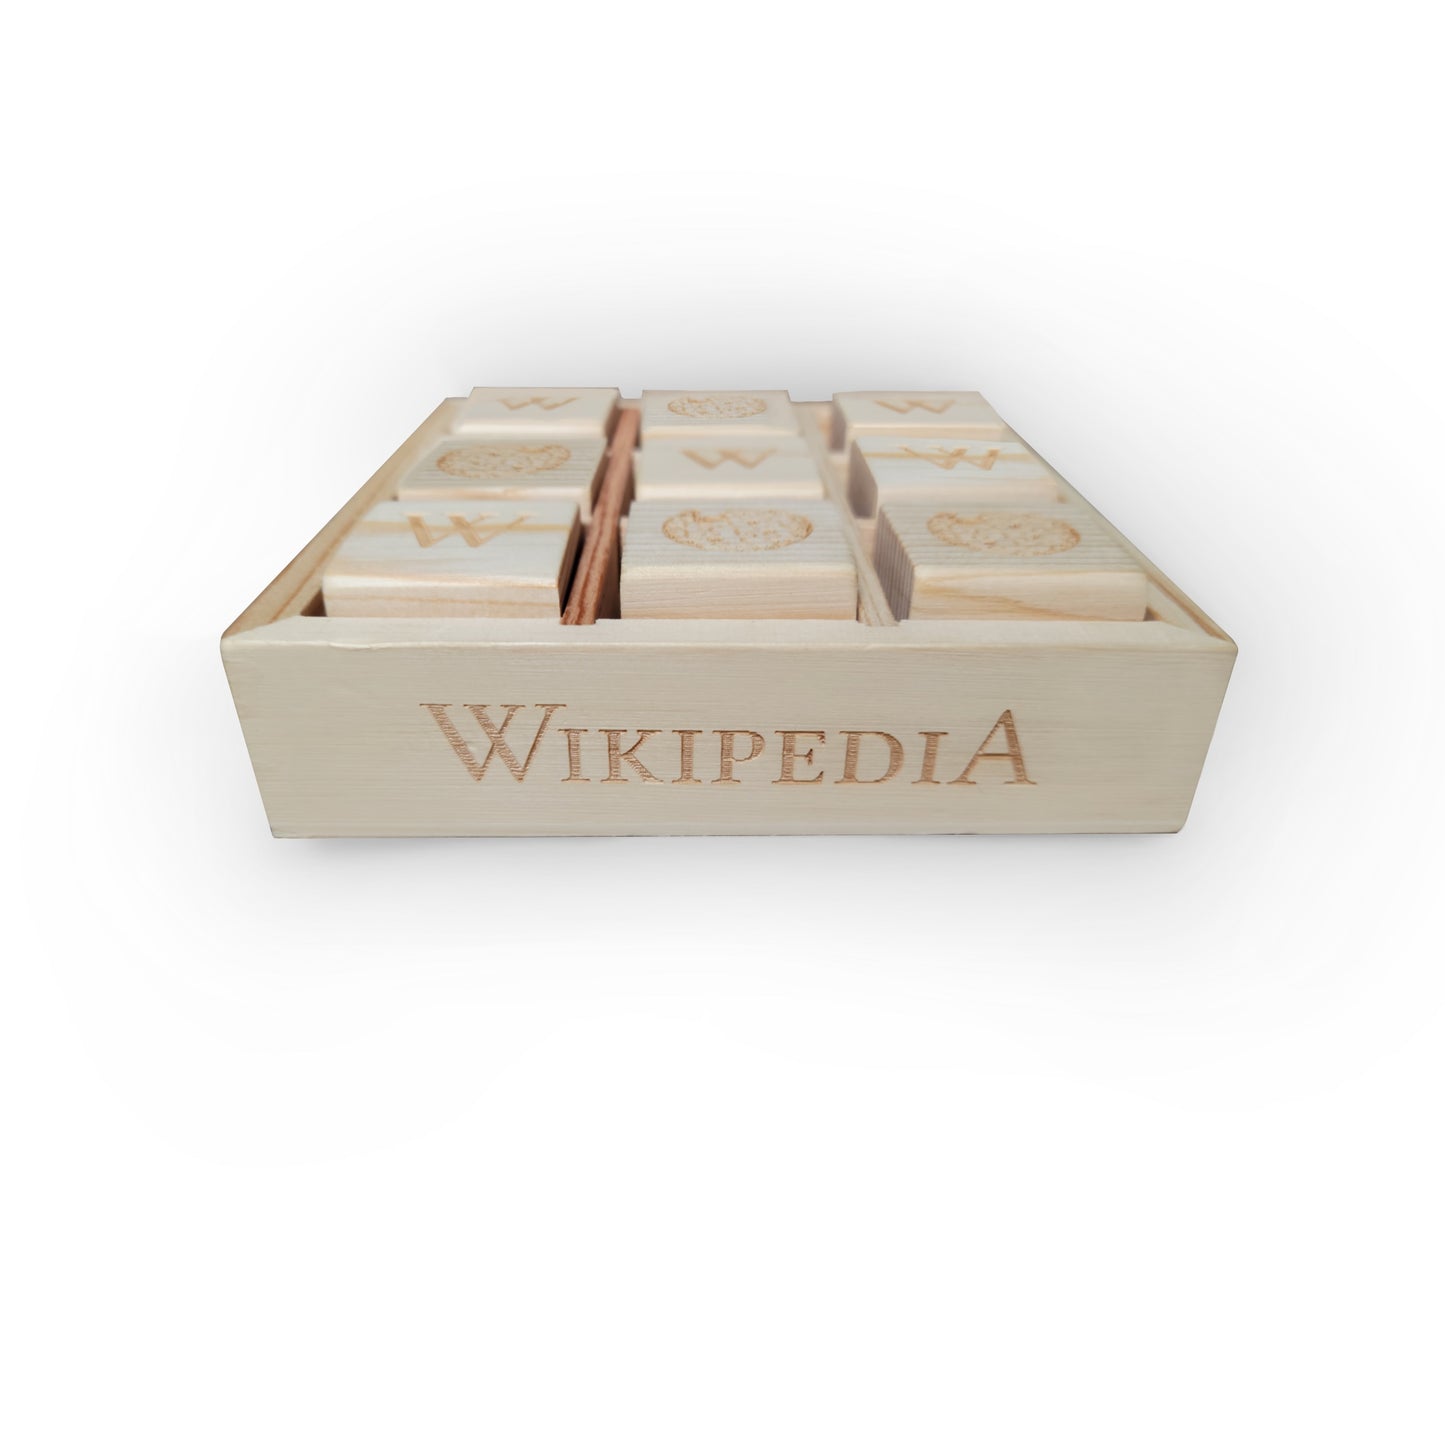 Ficheiro:Jogo da velha - tic tac toe.png – Wikipédia, a enciclopédia livre